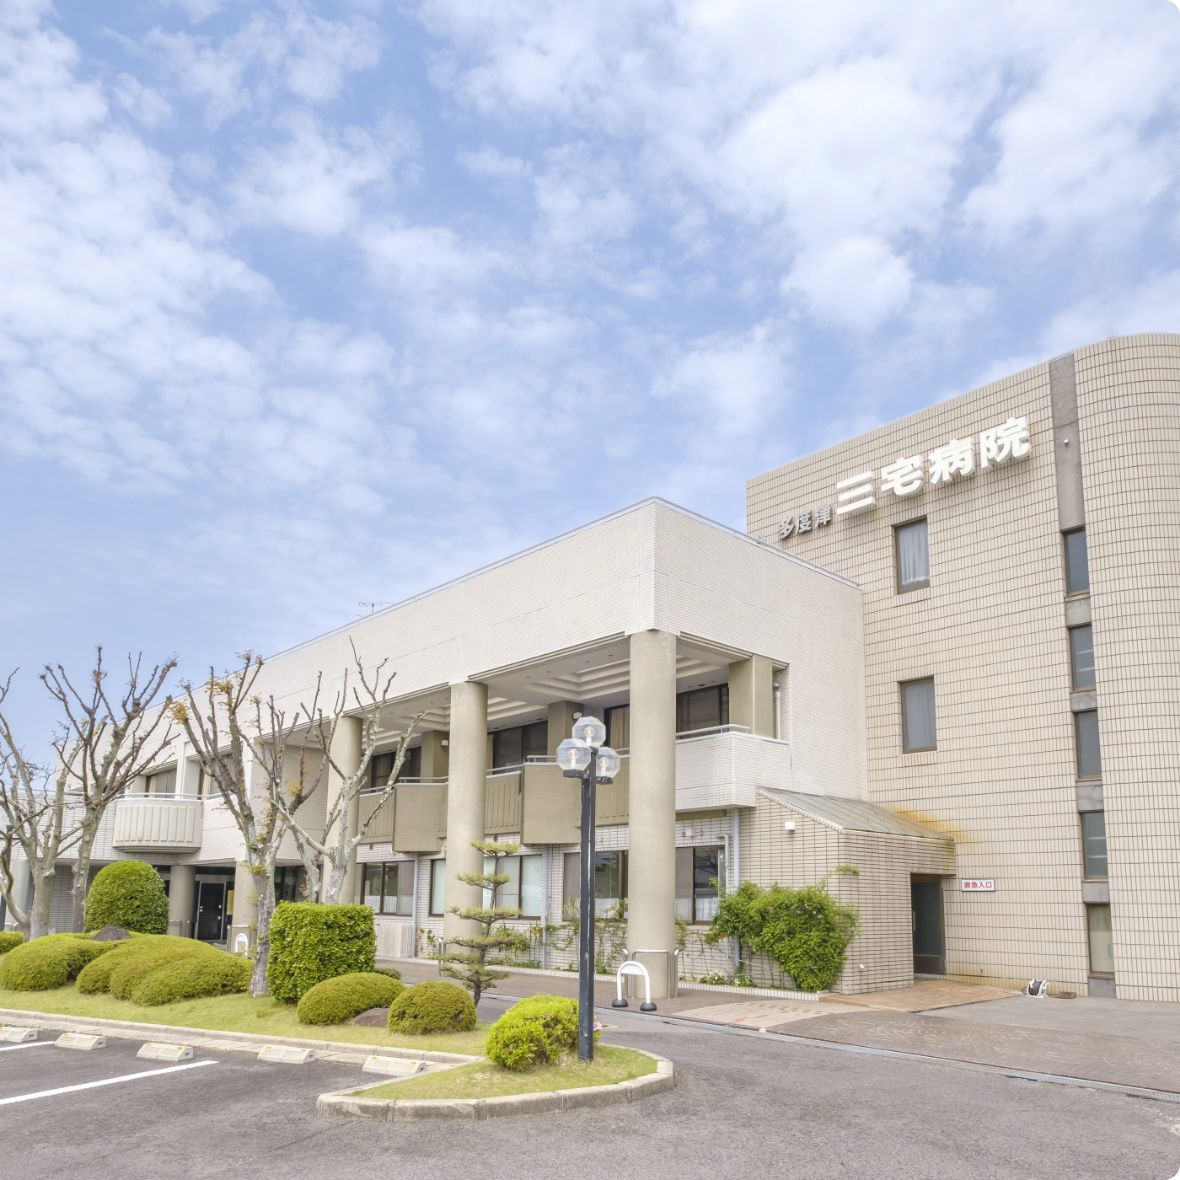 多度津三宅病院は昭和22年に開業した外科の病院です。